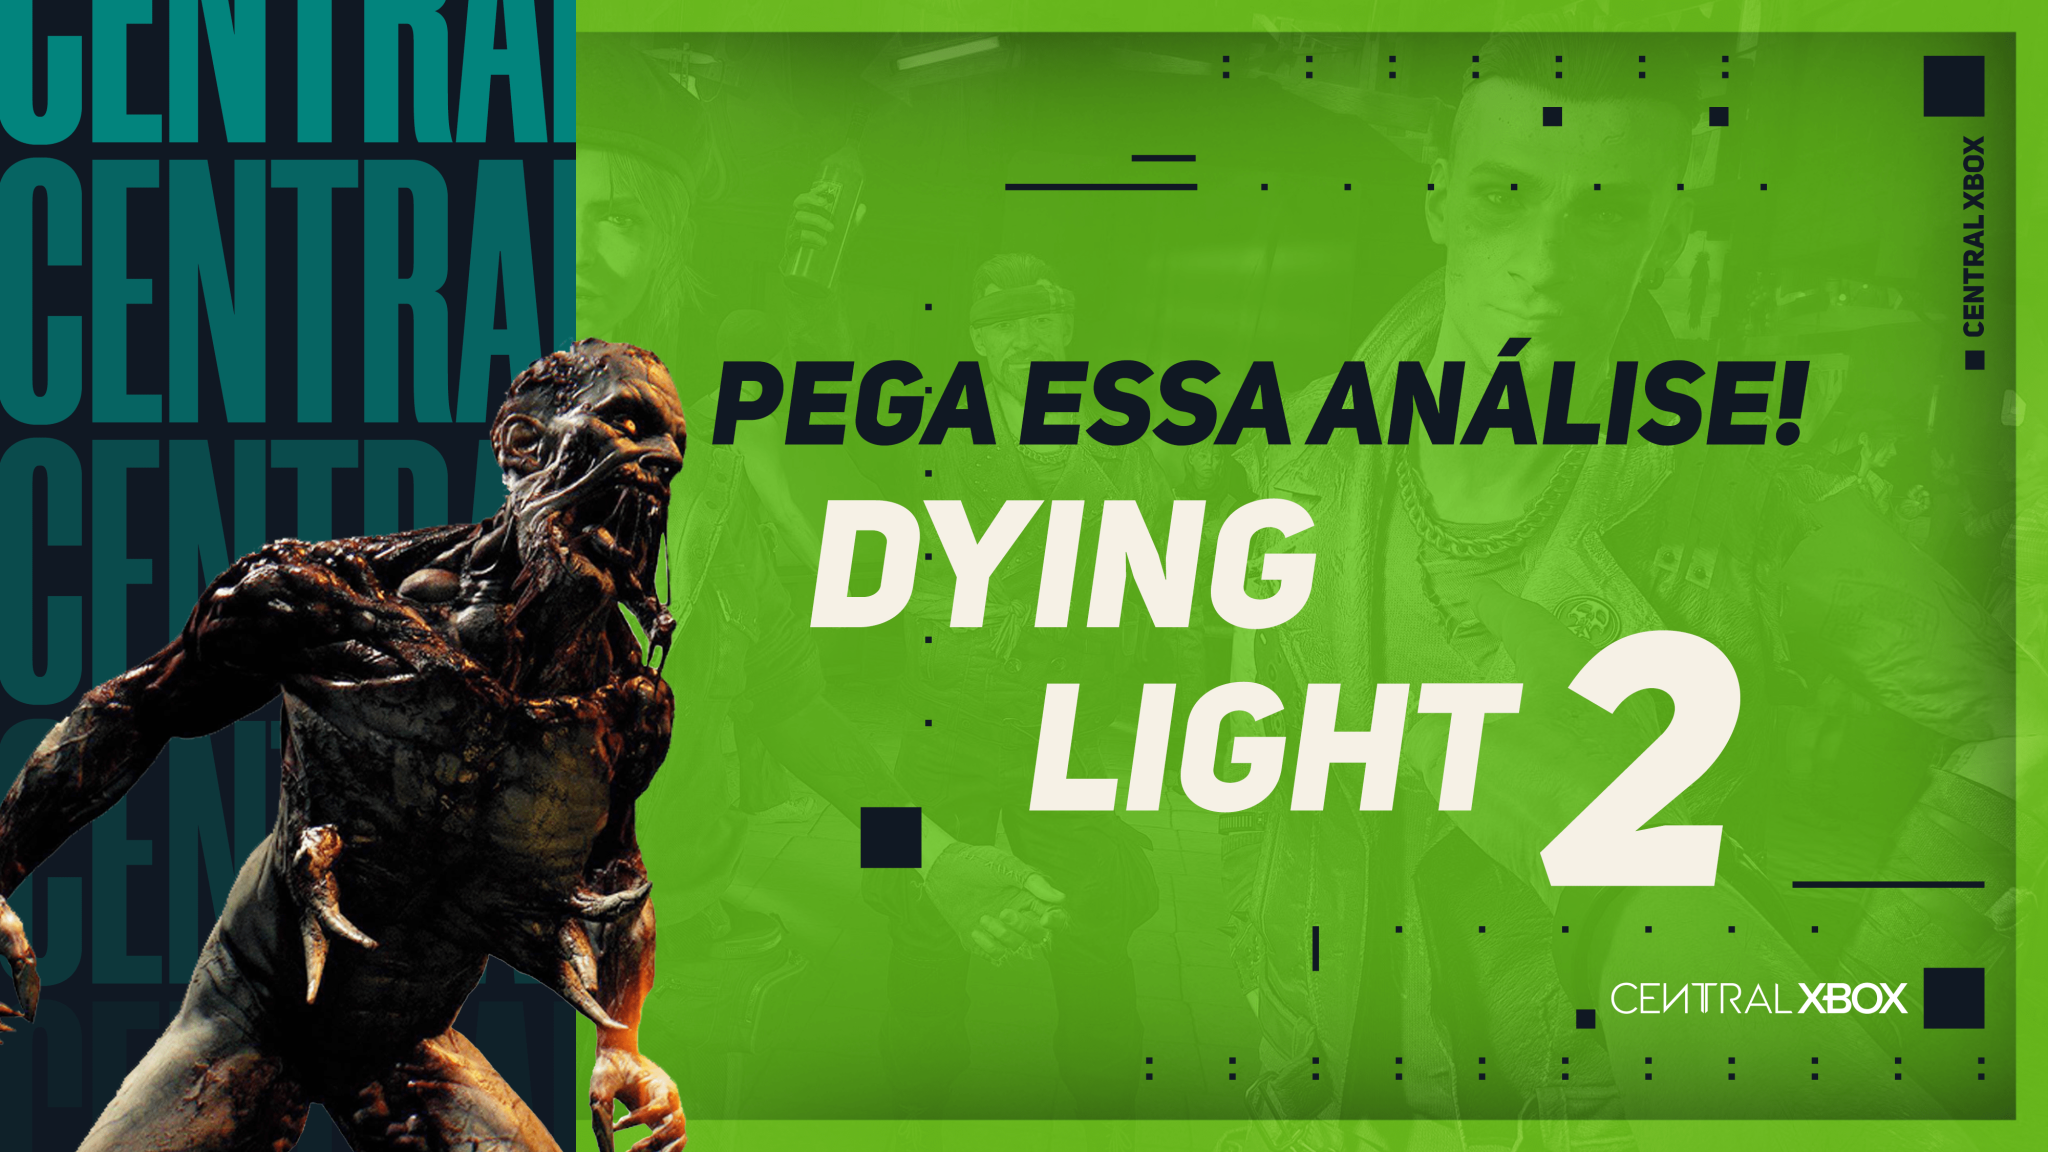 Como Dying Light se tornou um dos maiores jogos de zumbi